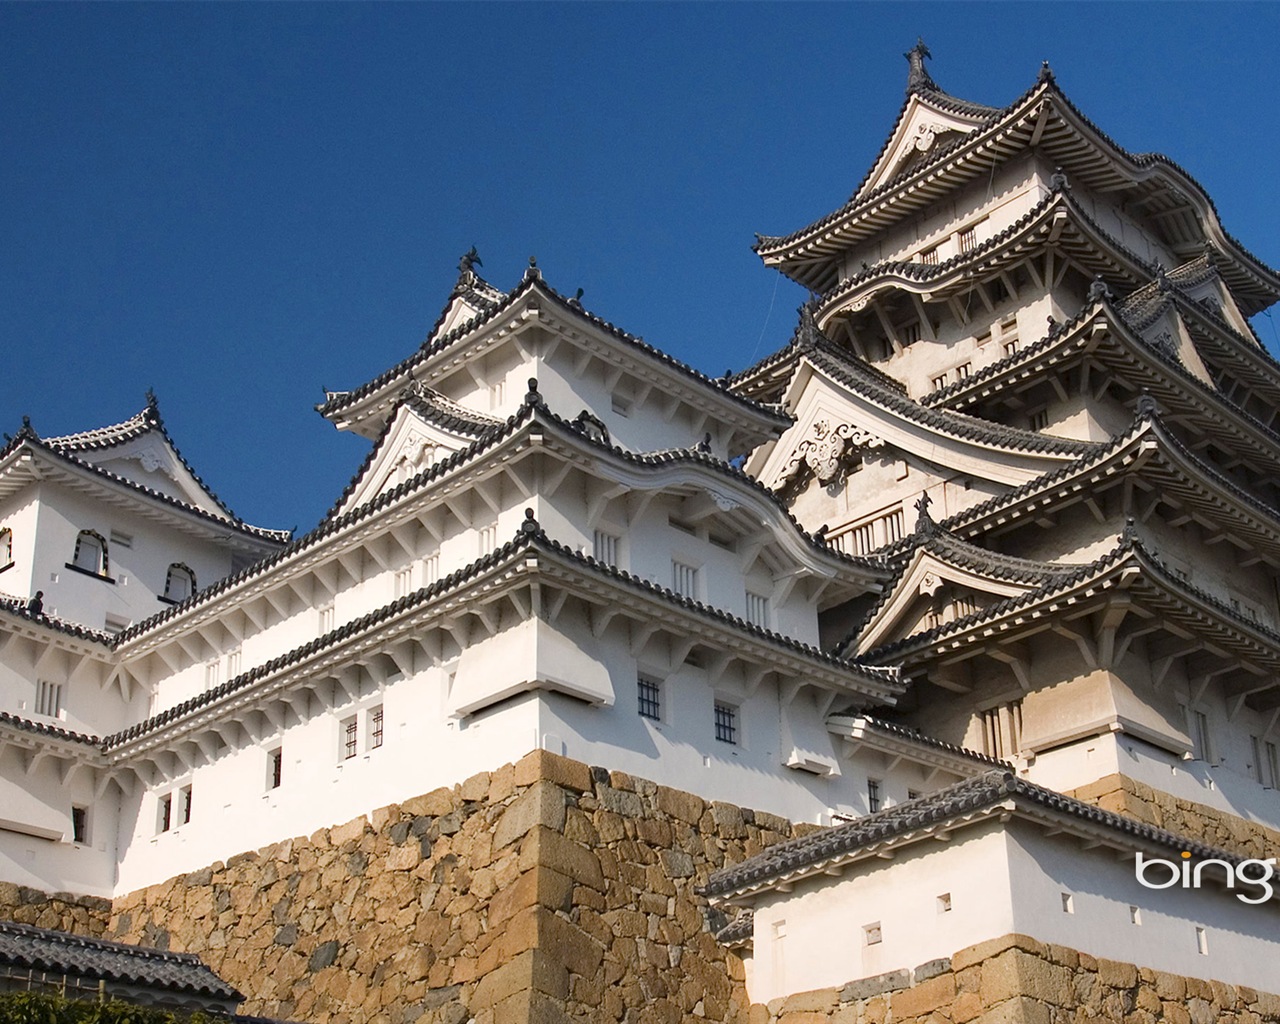 Bing 微软必应高清壁纸：日本风景主题壁纸18 - 1280x1024